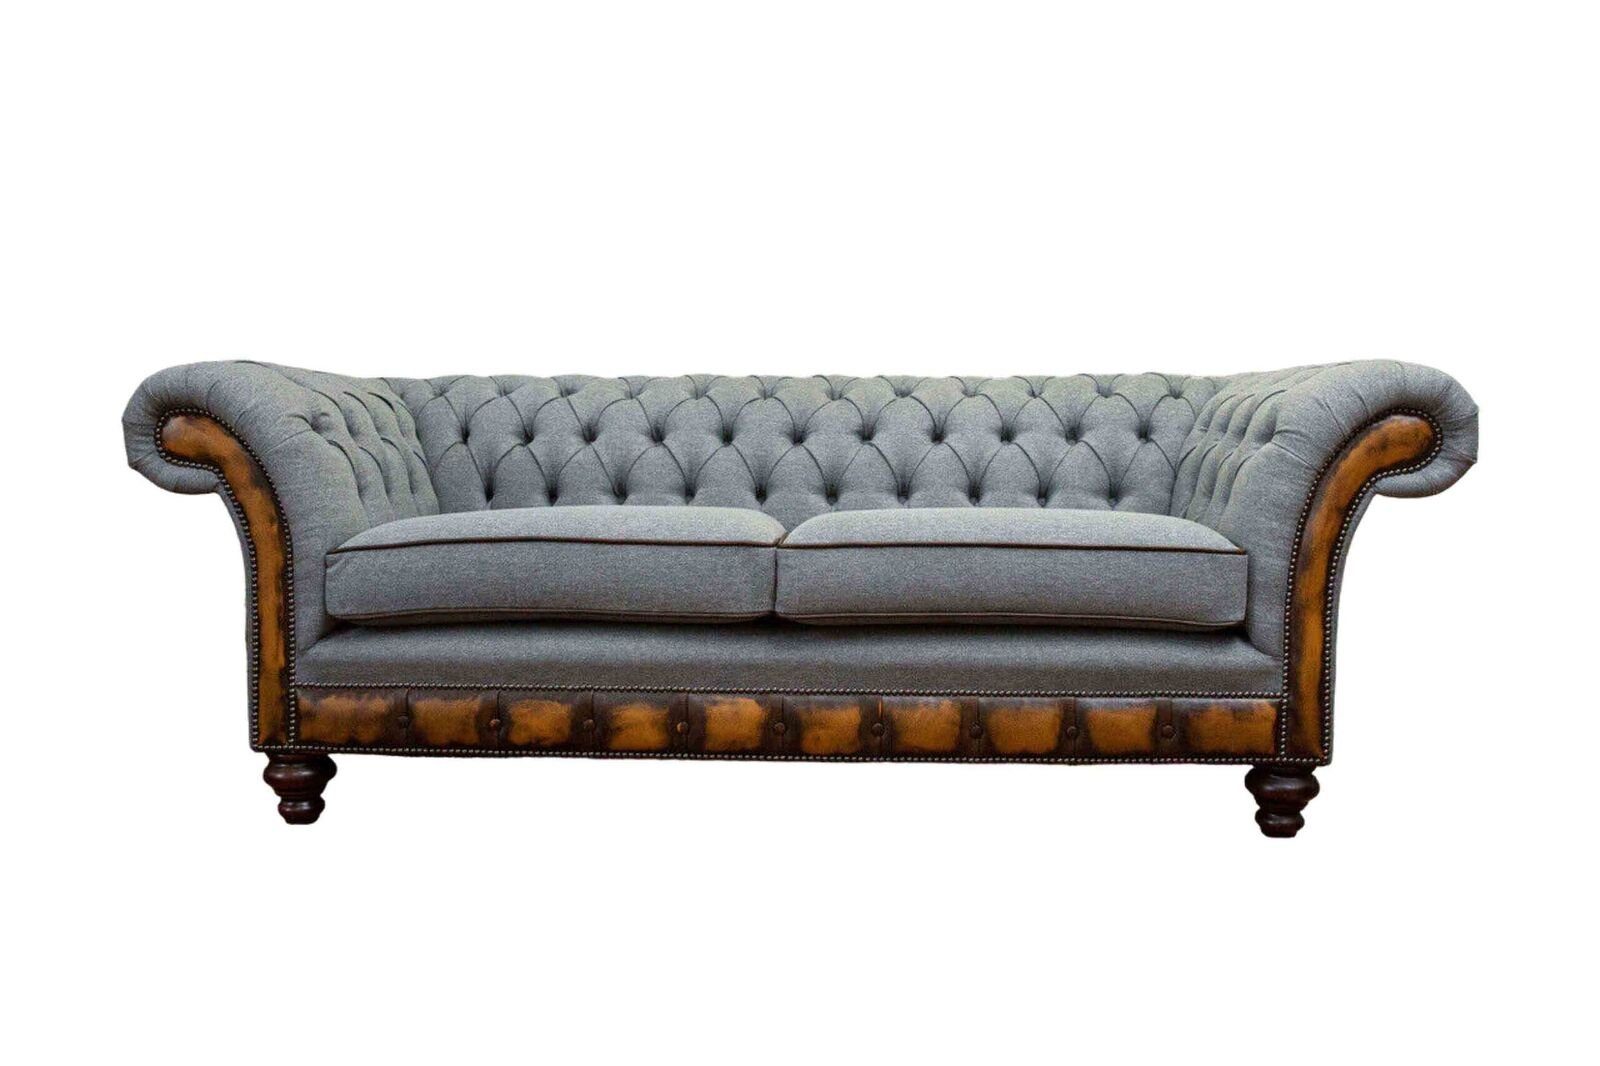 JVmoebel Sofa Luxus Dreisitzer Moderne Couch Möbel Grau Sofas Stoff Textil Polster, Made In Europe